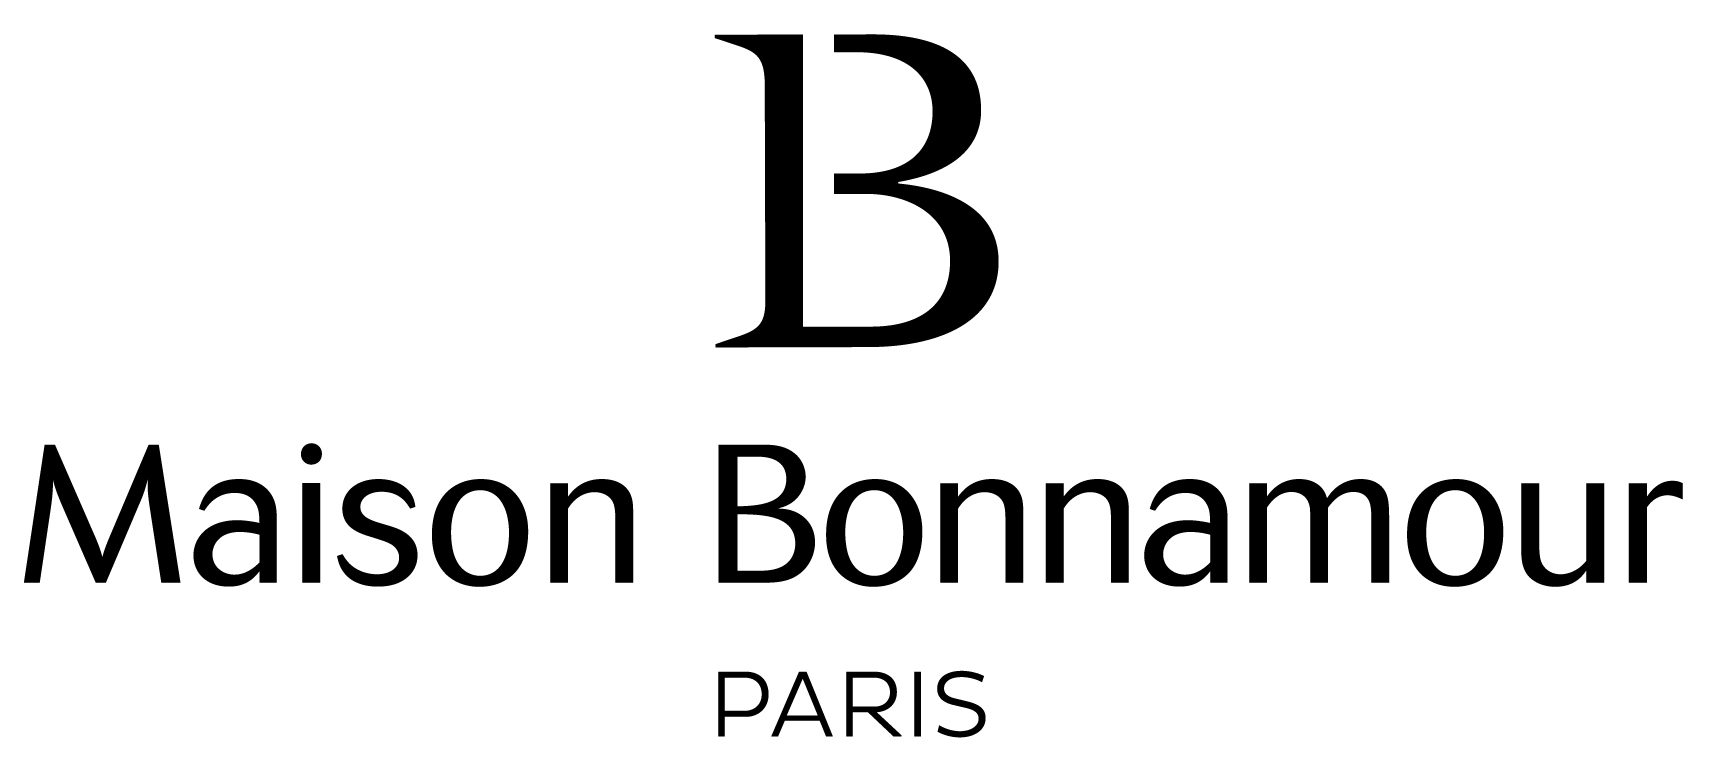 Maison Bonnamour - sacs et accessoires écoresponsables - haute maroquinerie végane - made in France